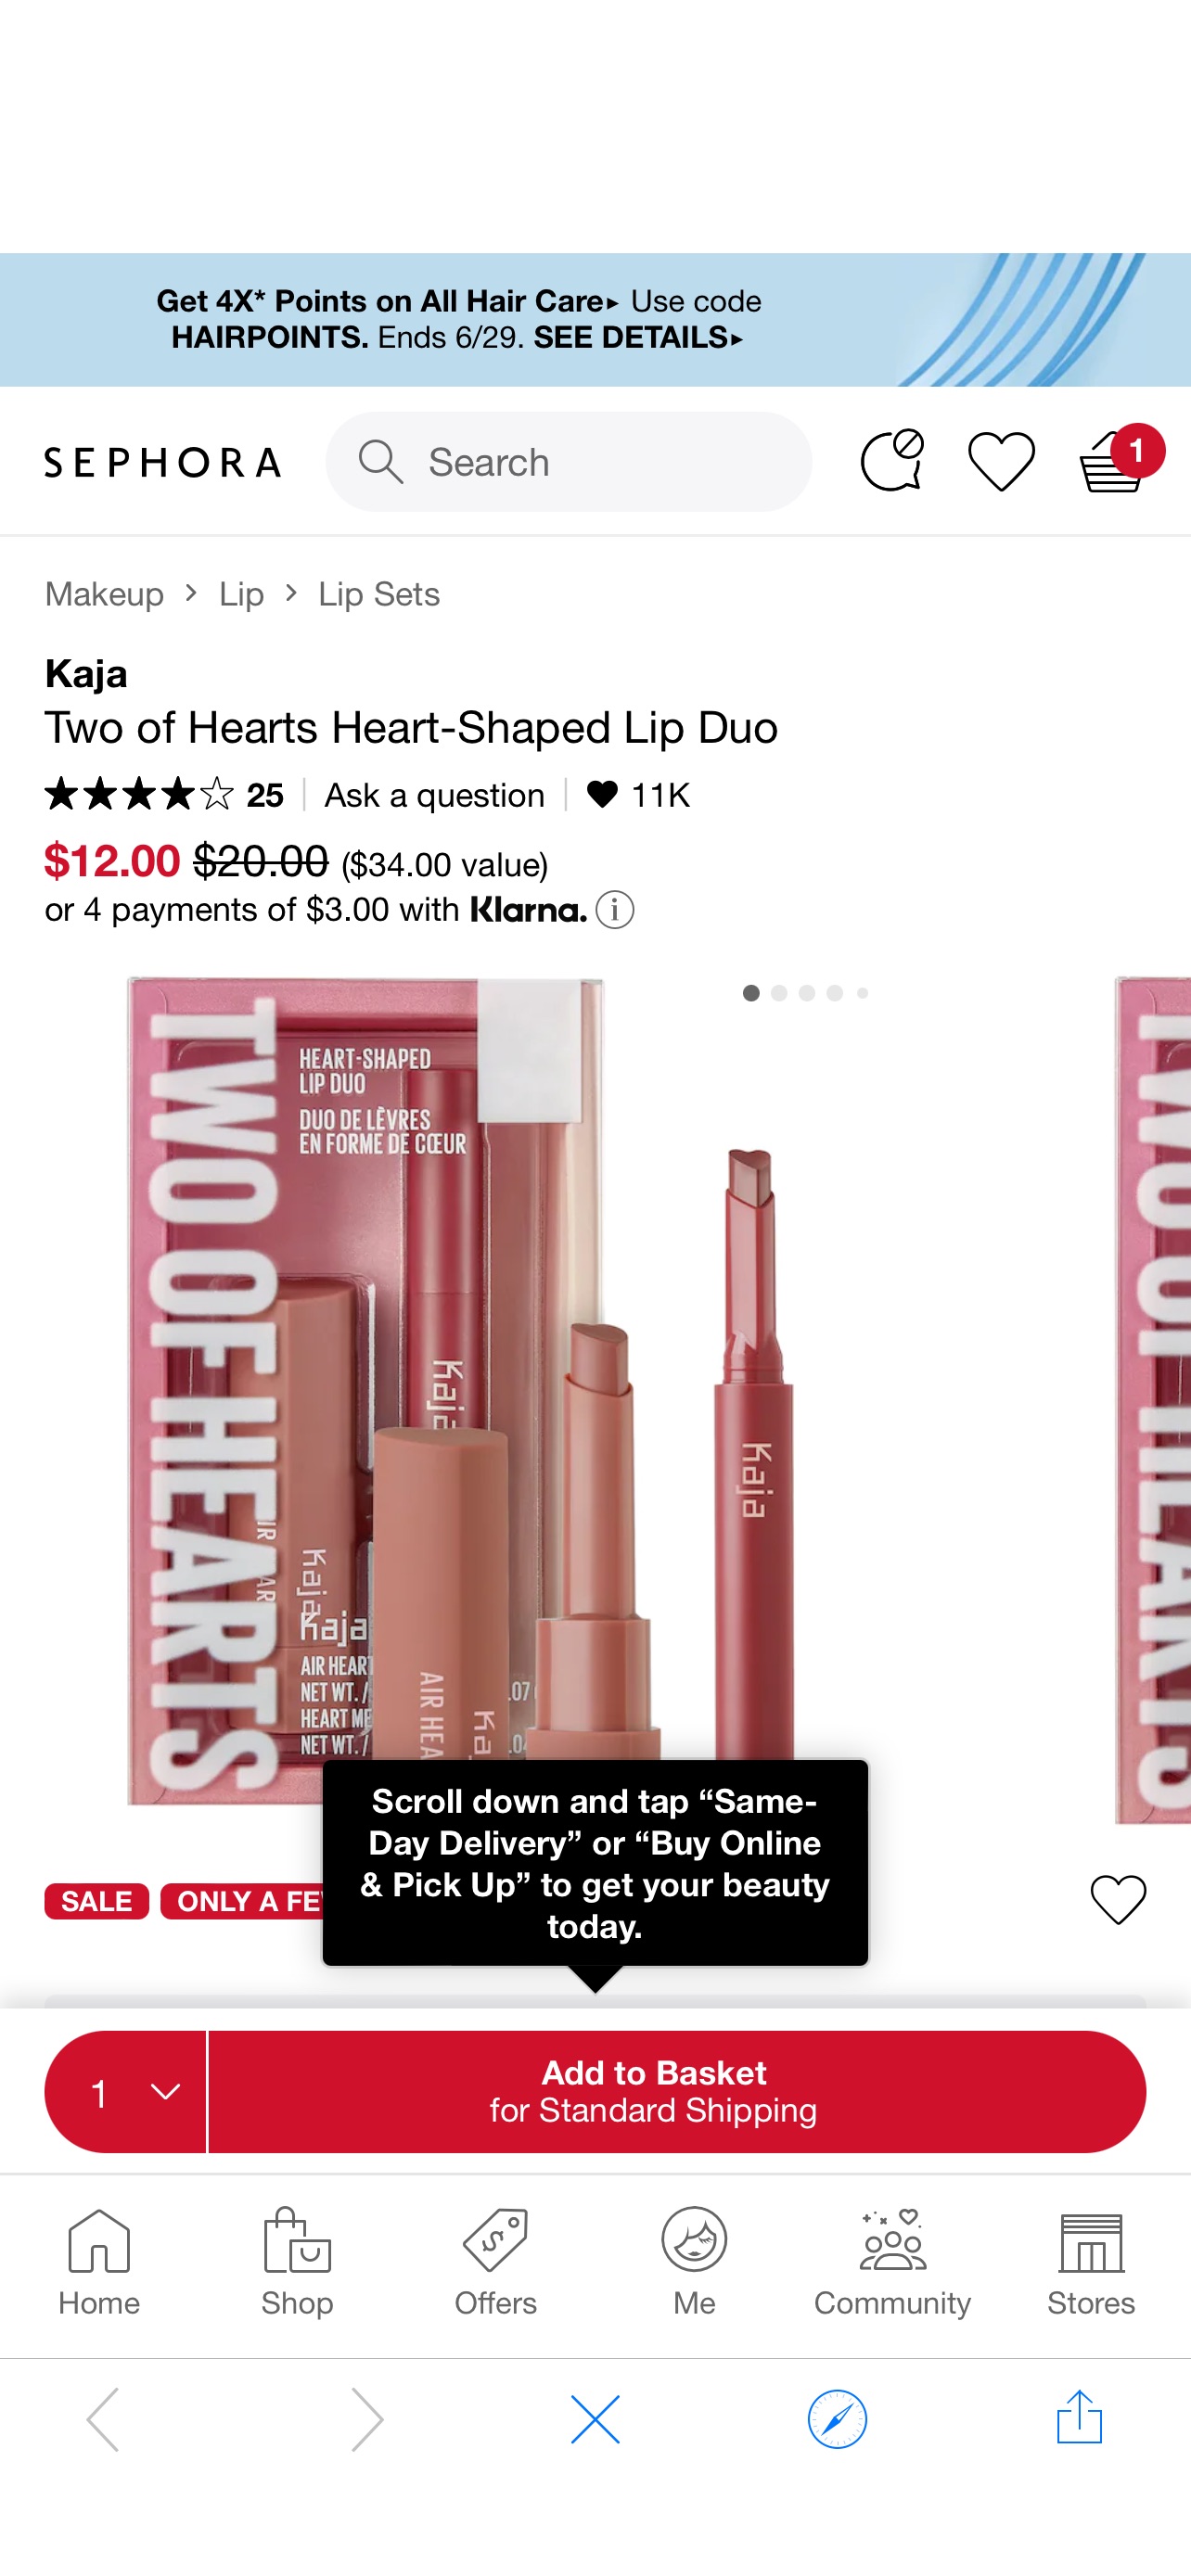 Two of Hearts Heart-Shaped Lip Duo - Kaja心形口红套装补货 | Sephora